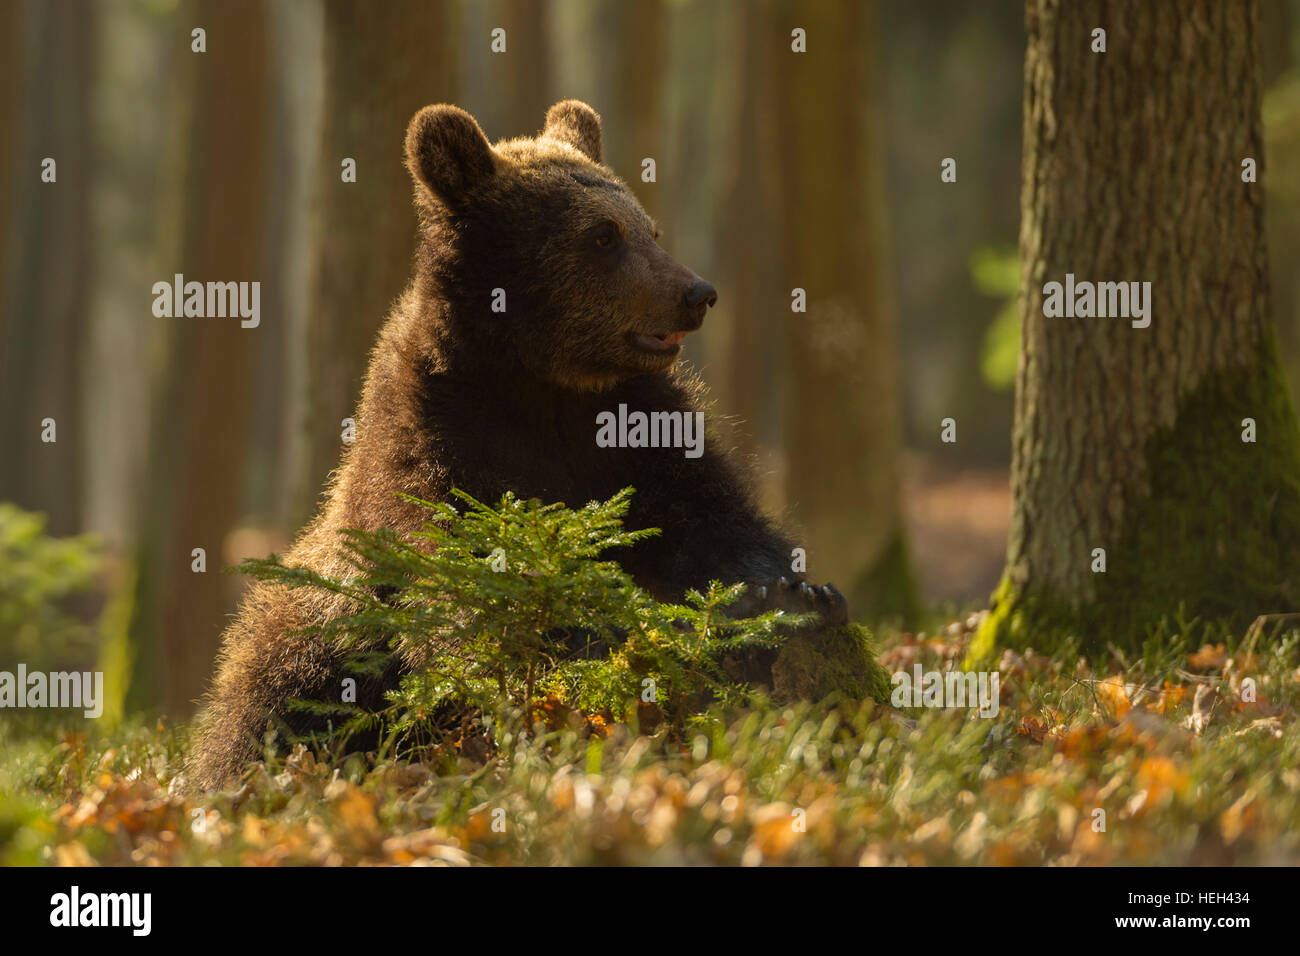 Europäische/braunbaer Braunbär (Ursus arctos), erwachsen Cub, sitzen auf dem Boden des Waldes, sieht lustig, goldenes Licht. Stockfoto